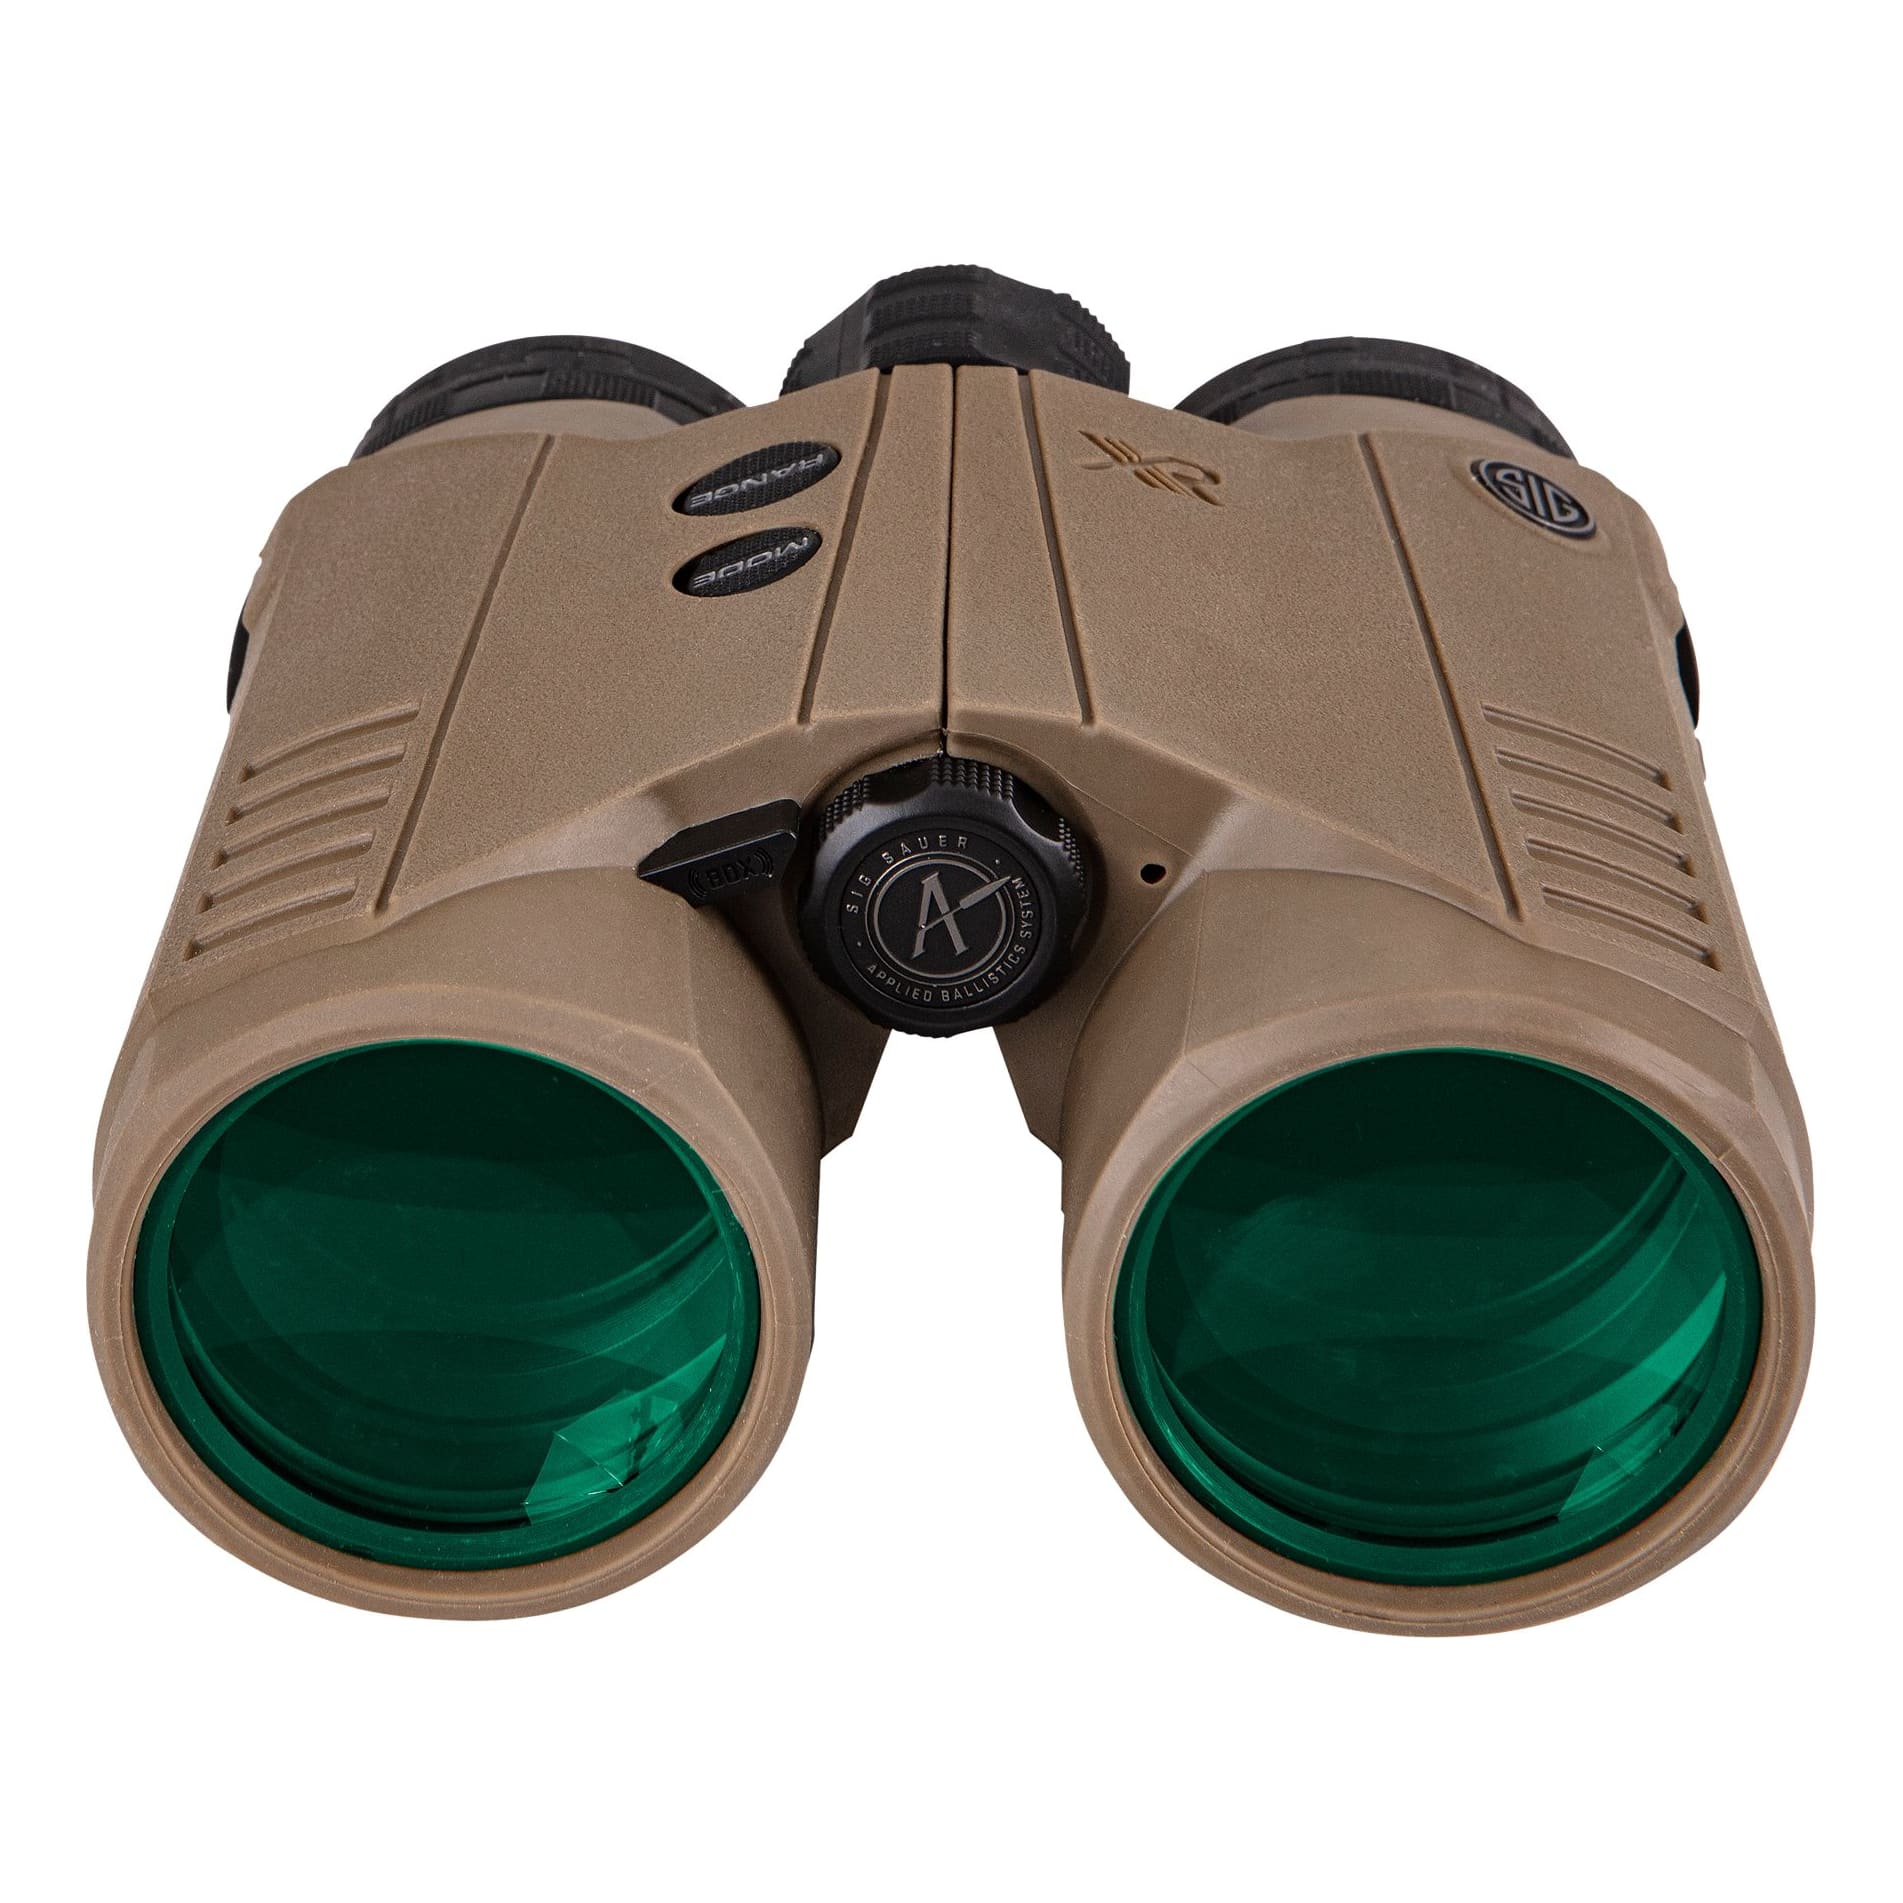 Sig Sauer® KILO10K-ABS HD Ballistic Rangefinding Binoculars